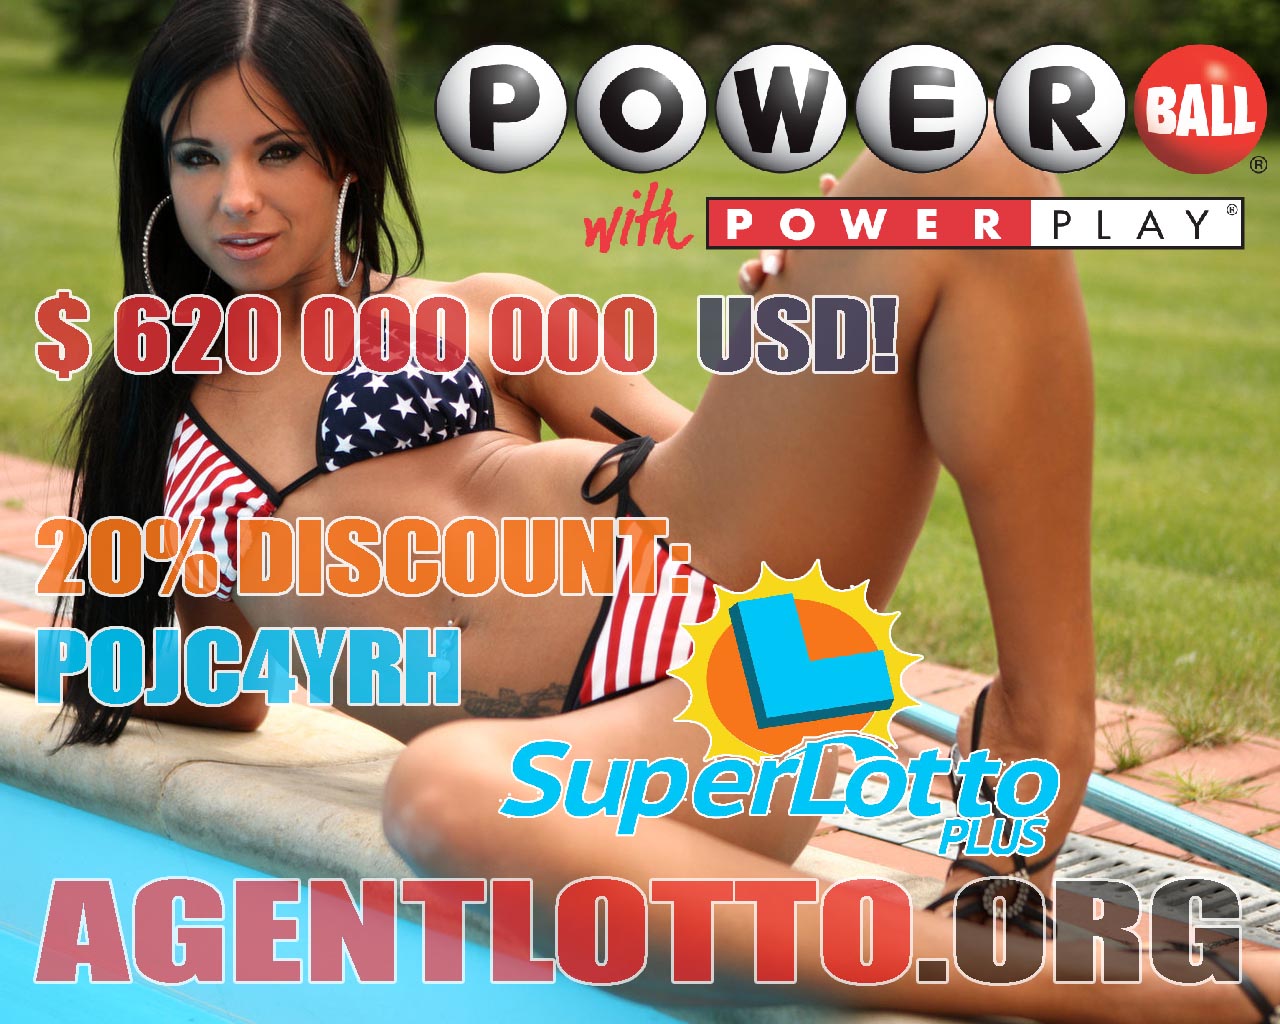 🤑🎱 СУПЕР-КОМБО! 🎫💎$ 620 000 000 USD POWERBALL + простая игра SUPERLOTTO PLUS = - 20% 🎁